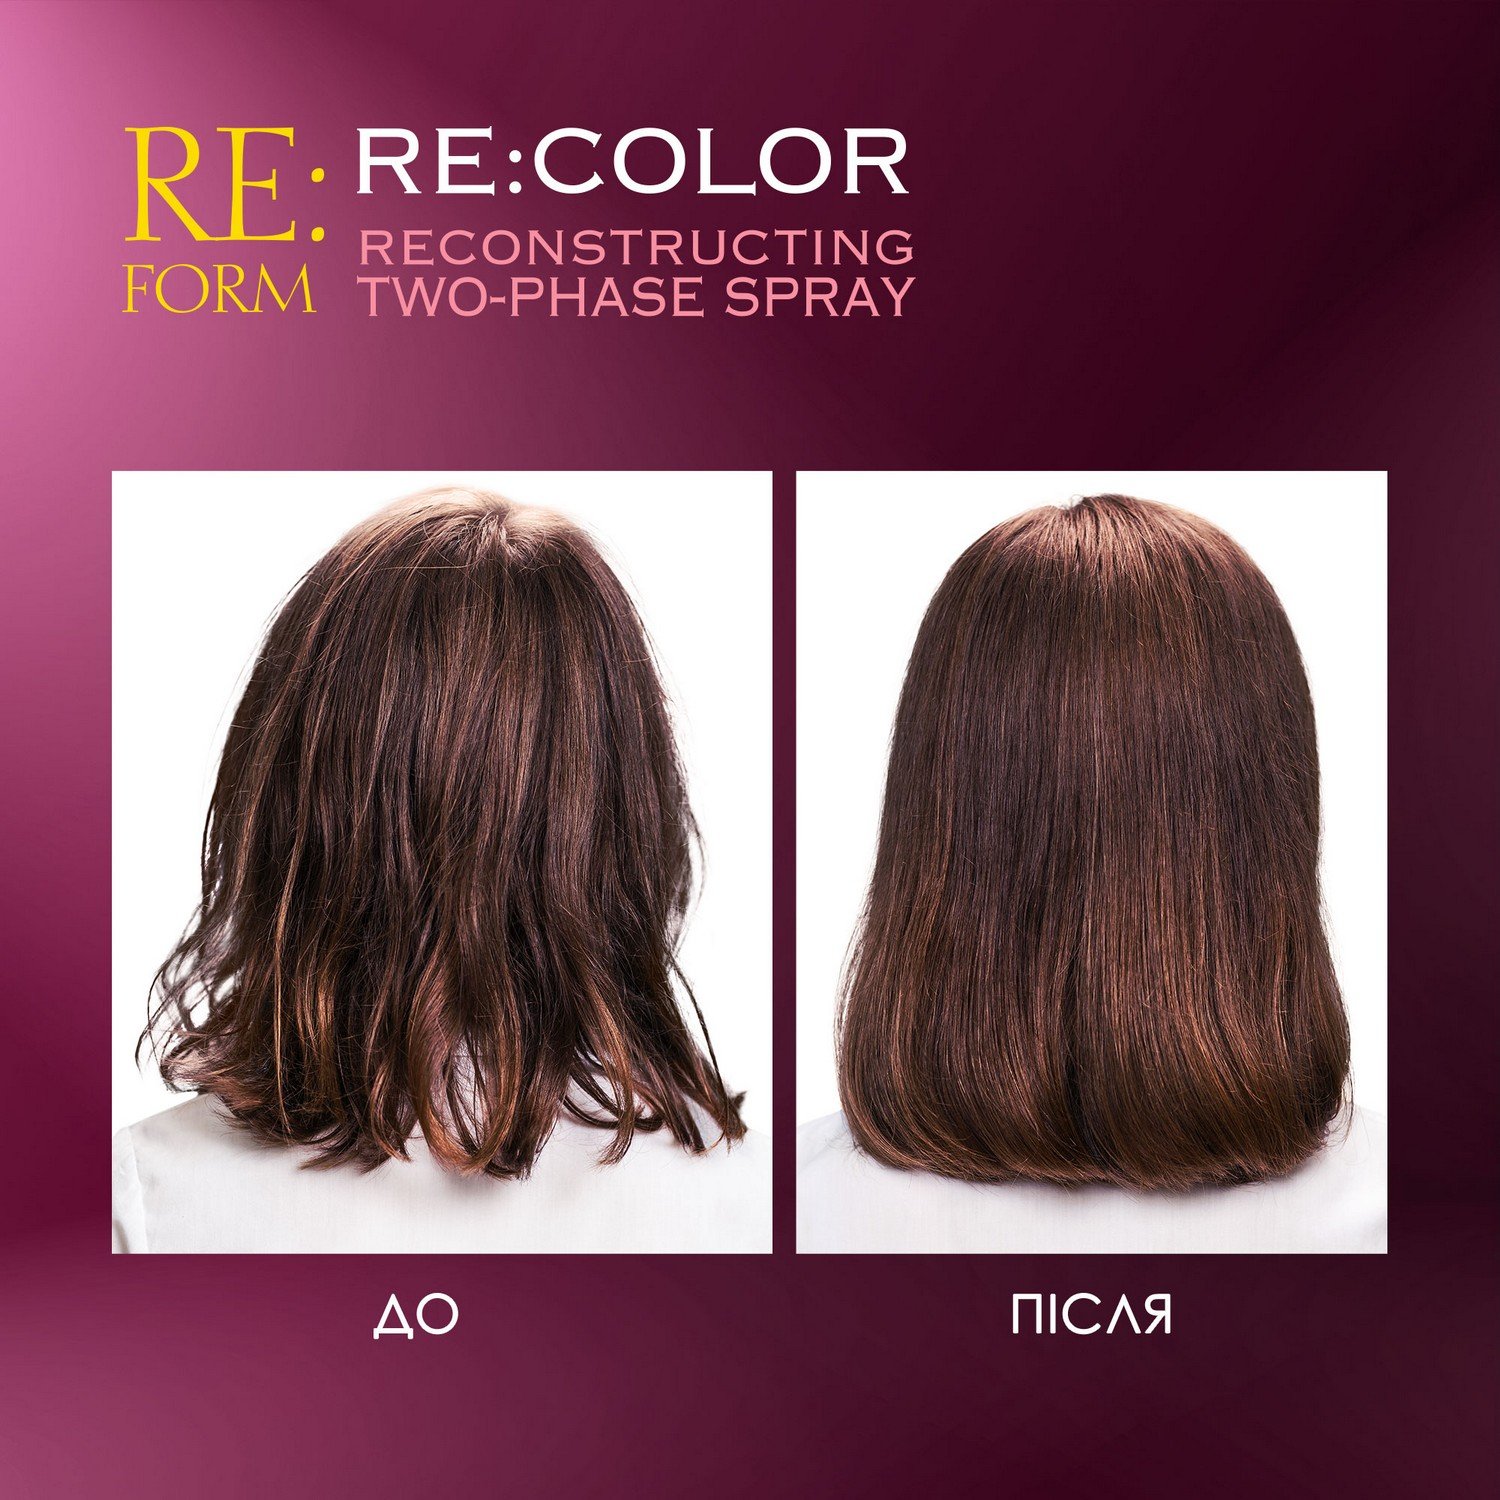 Реконструюючий двофазний спрей Re:form Re:color Збереження кольору та відновлення фарбованого волосся, 200 мл - фото 7